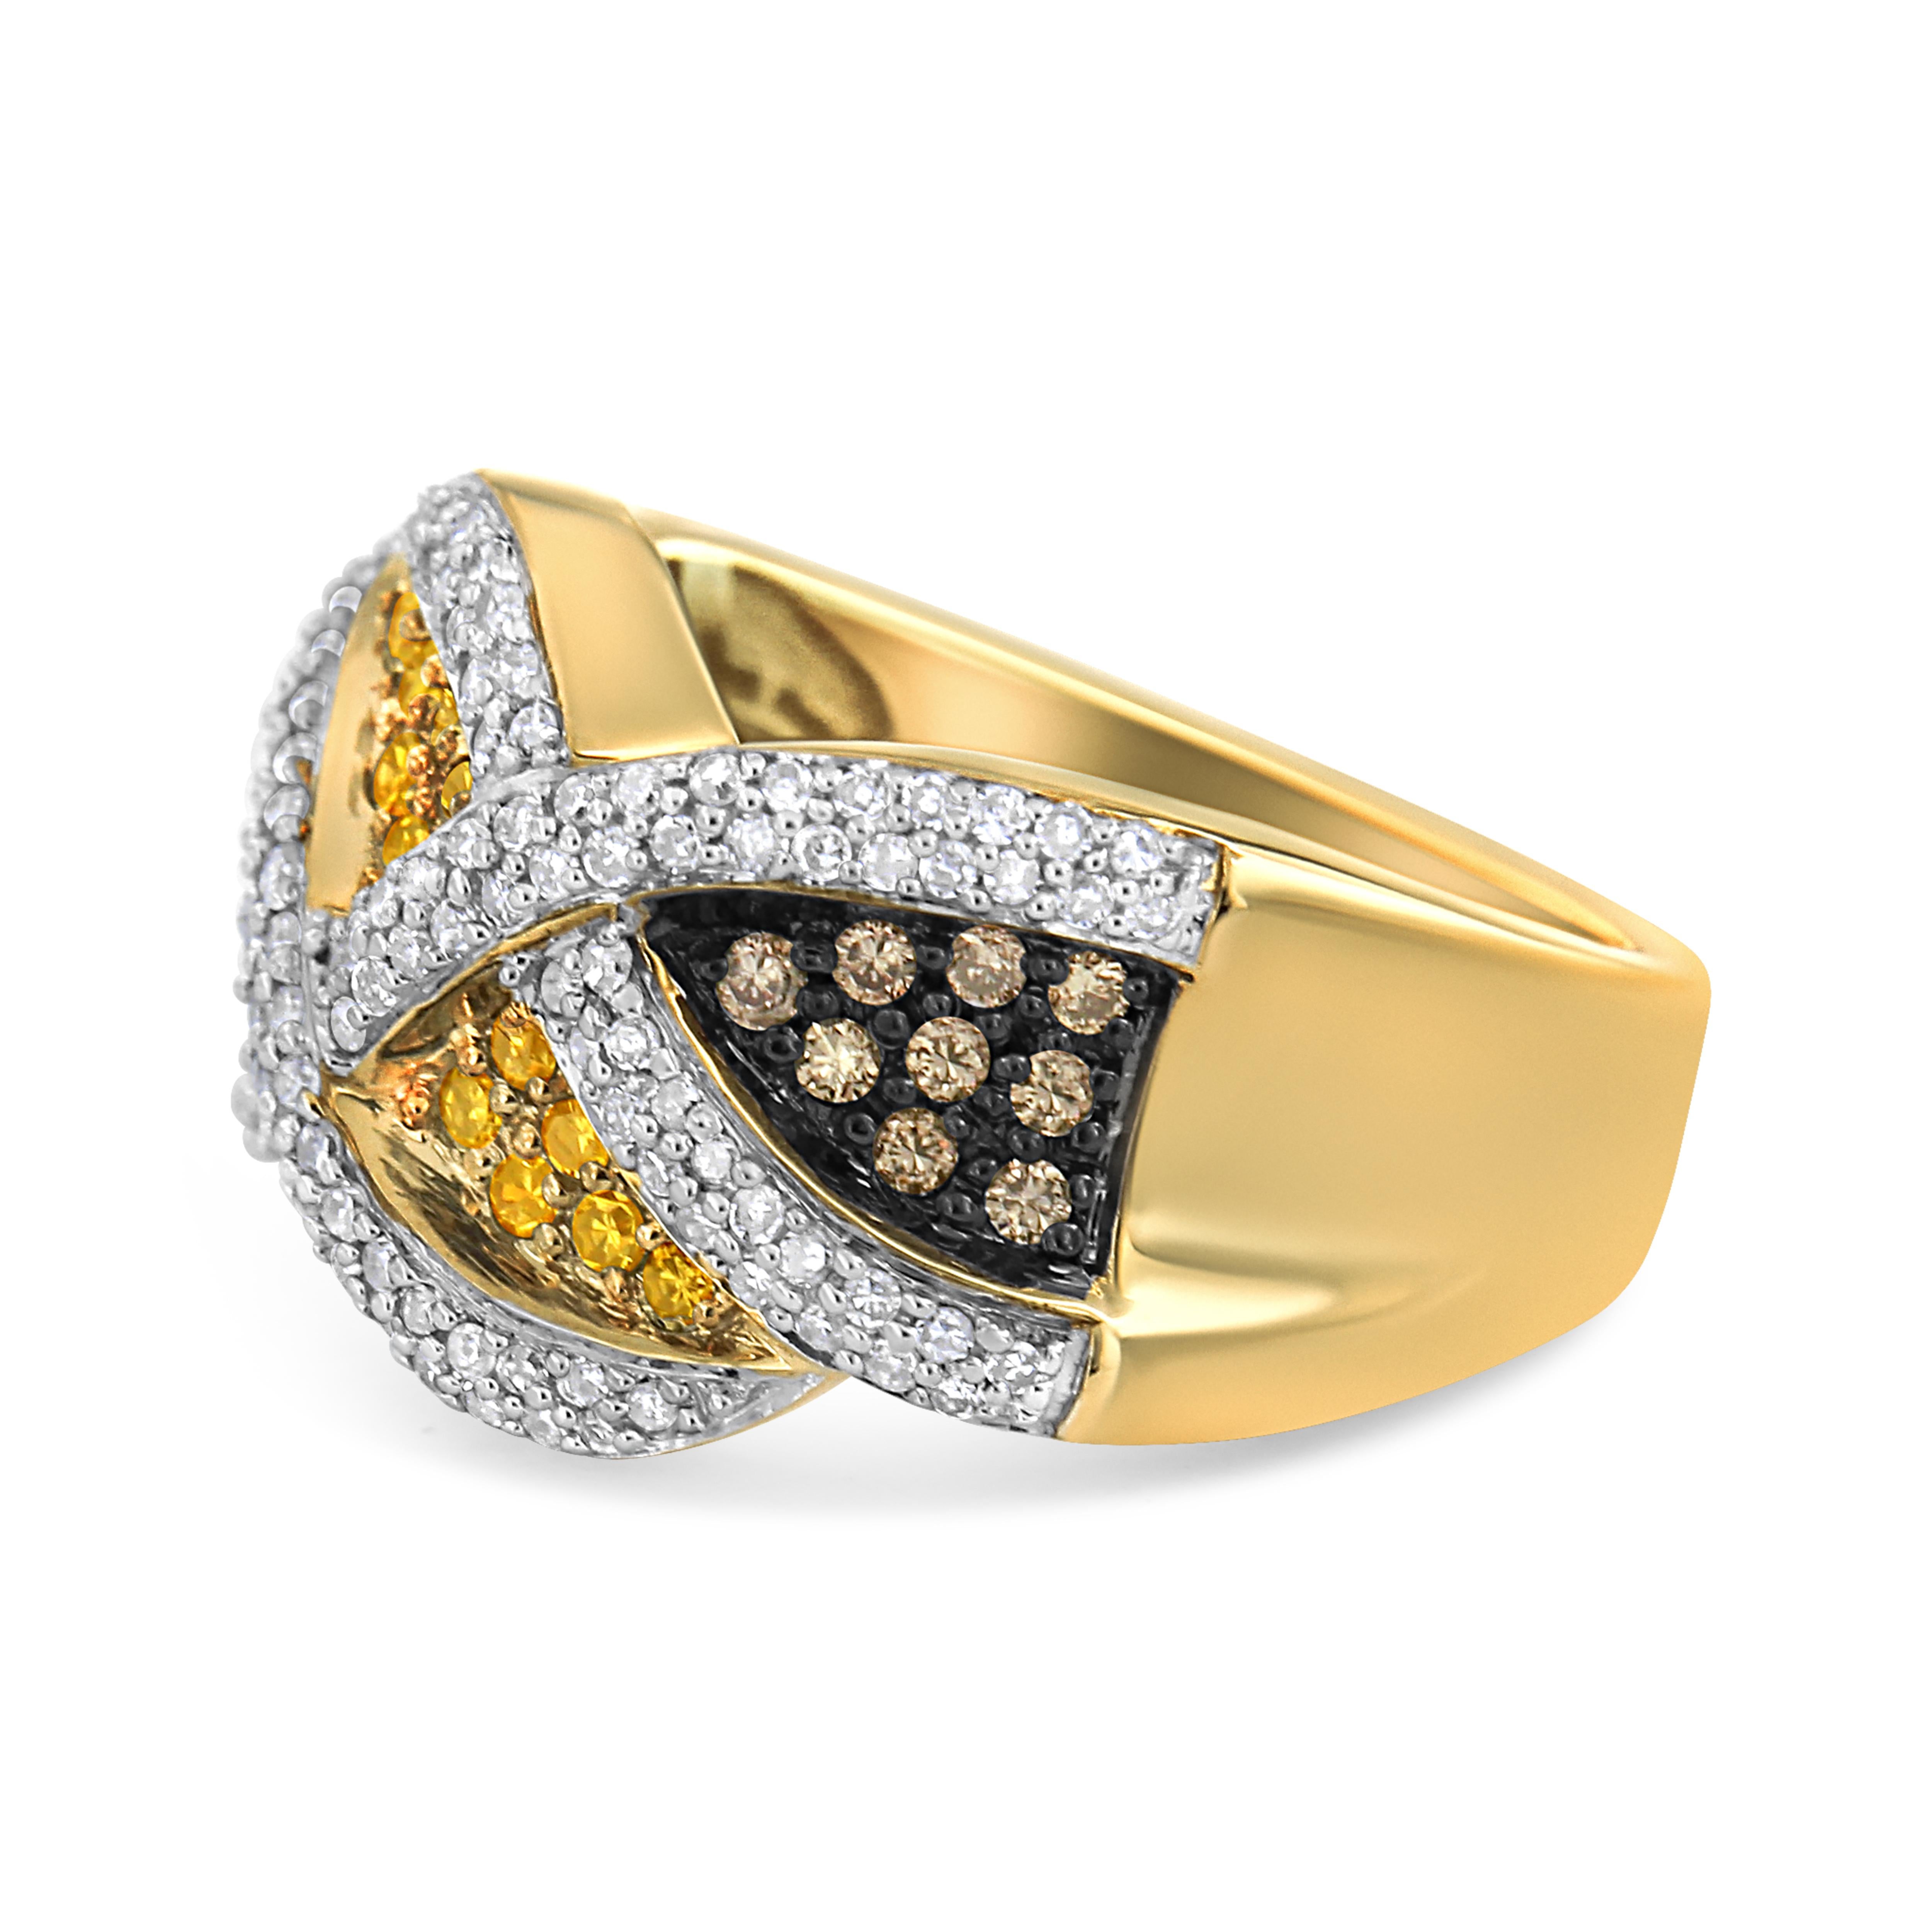 Verstärken Sie die Ausstrahlung Ihres femininen Looks mit diesem anmutigen Diamantring. Dieser modische Ring aus 14-karätigem Gelbgold ist mit glänzenden Diamanten im Rundschliff und champagnerfarbenen Diamanten verziert. Die zusätzlichen gelben